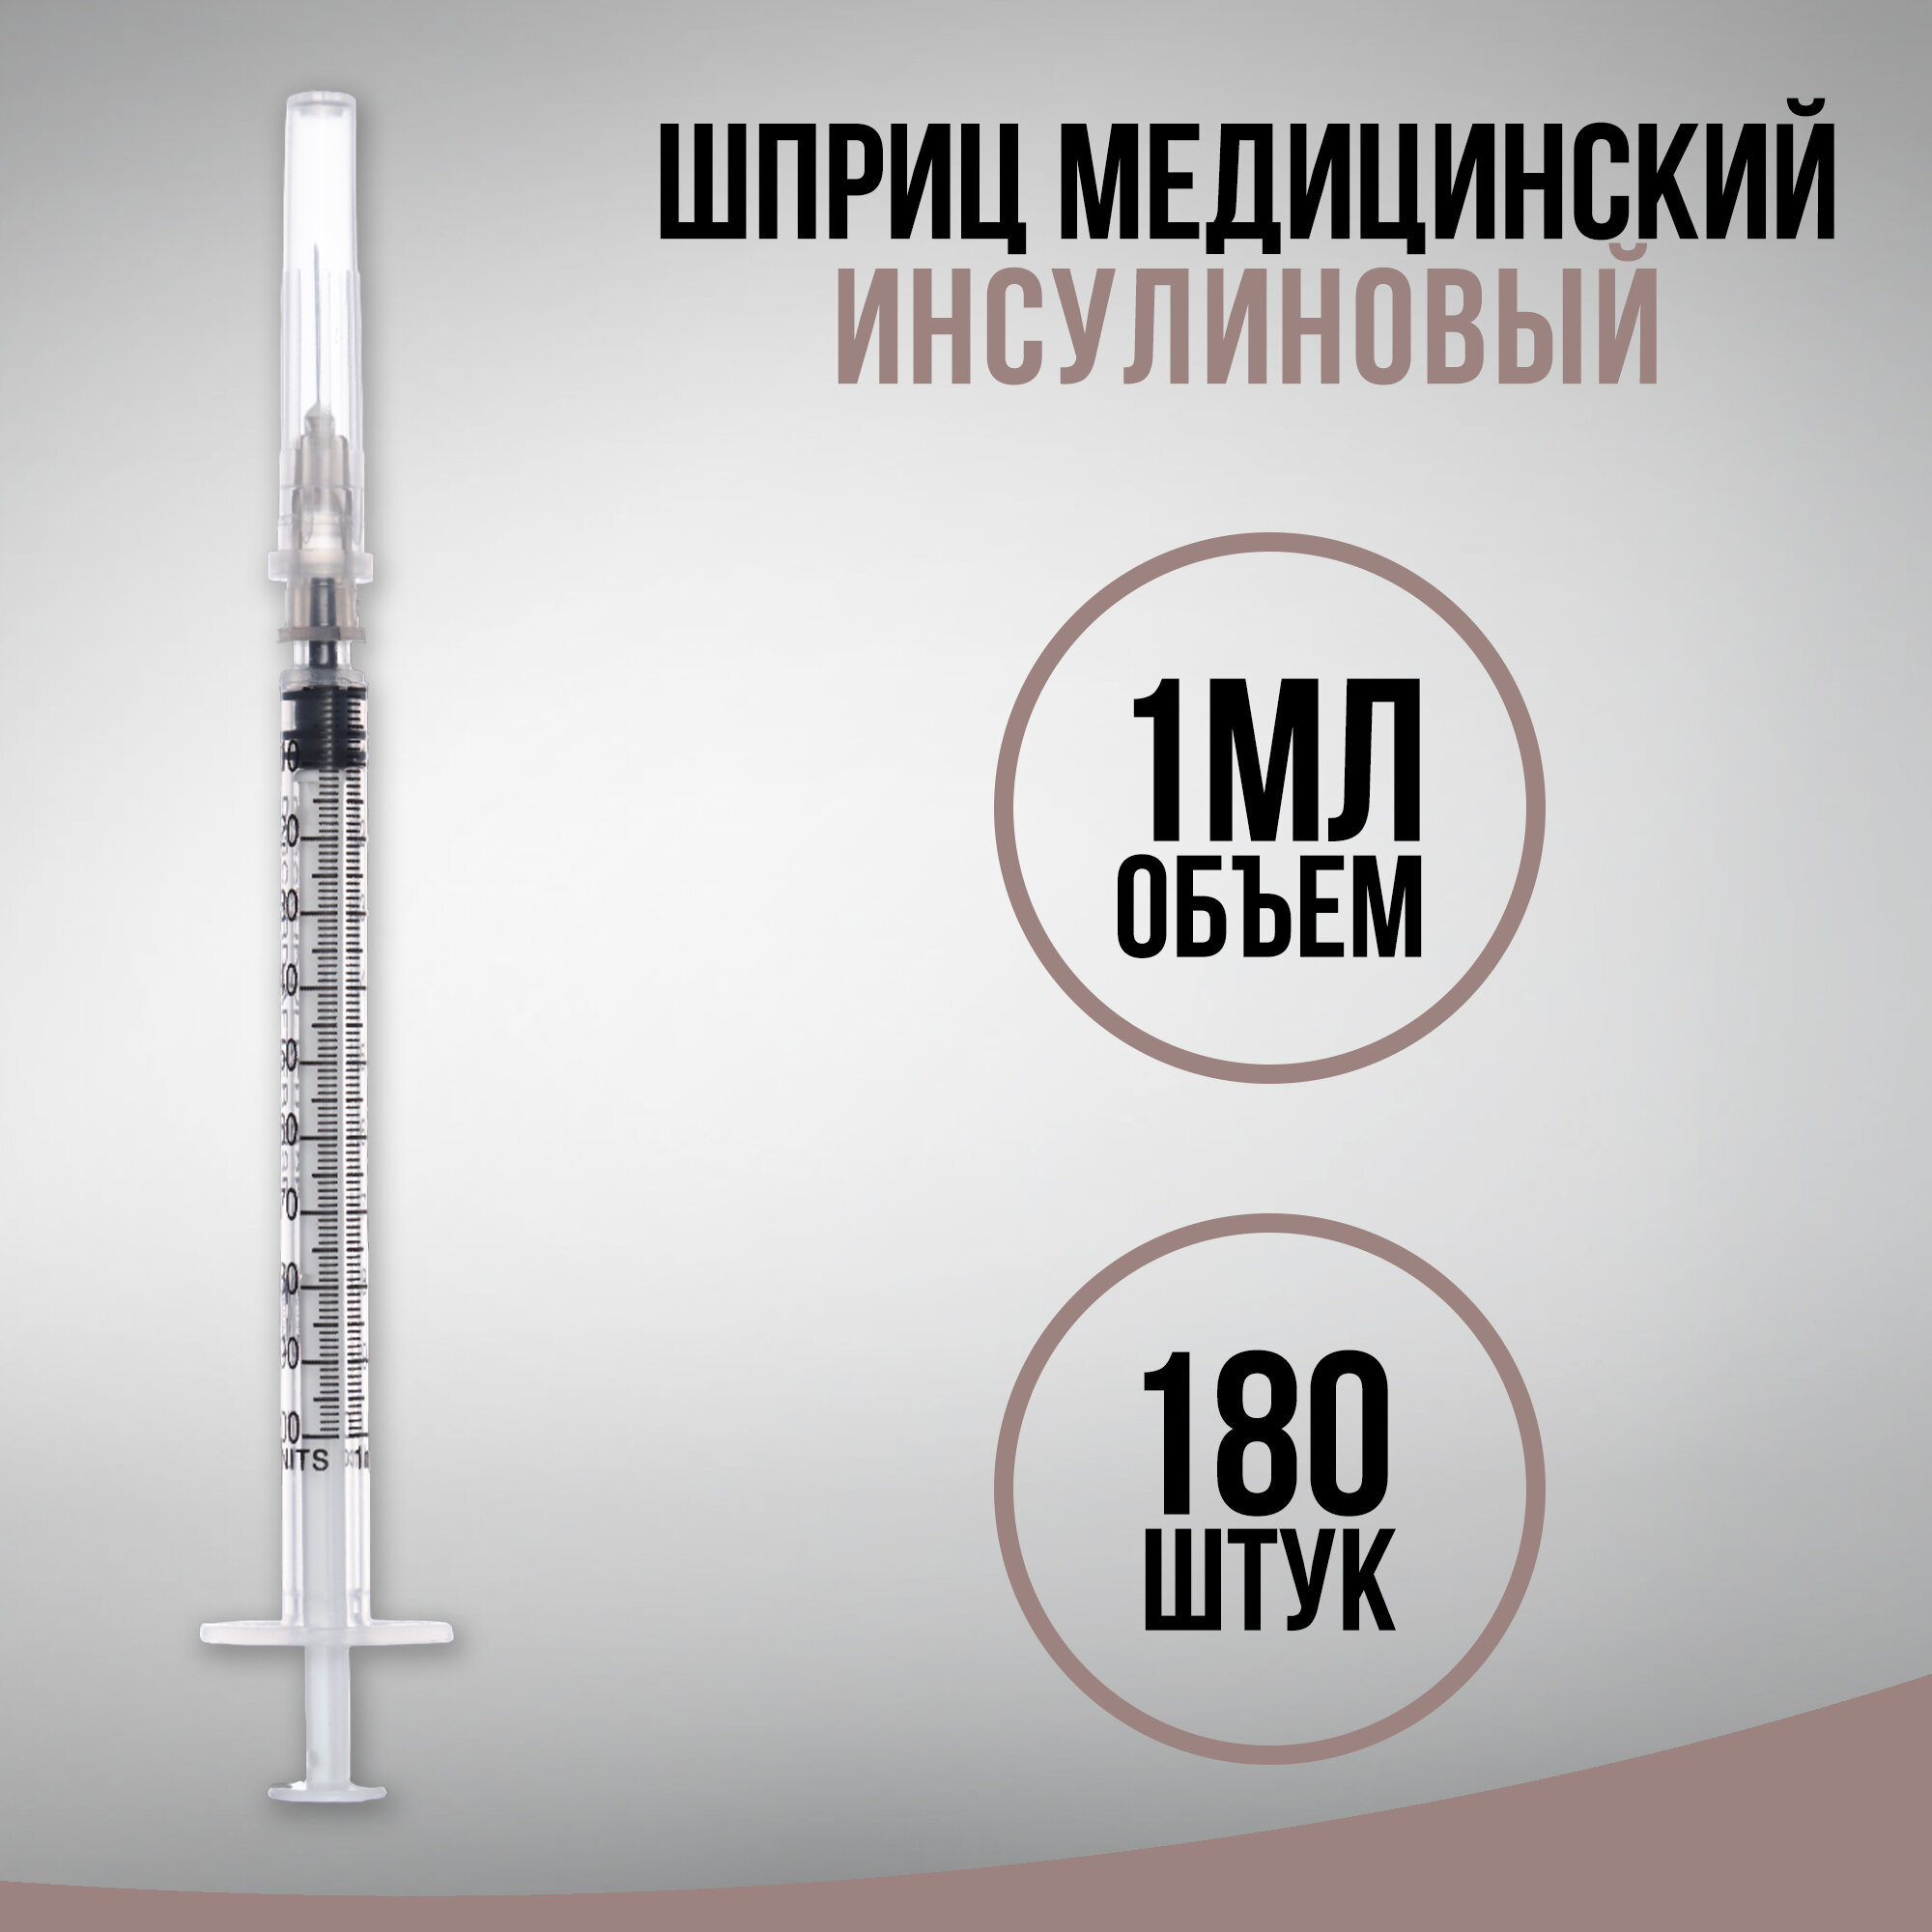 Шприц инсулиновый медицинский одноразовый 3-х компонентный U-100, 1 мл, с иглой 0,40 х 13,0 - 27G, 180 штук